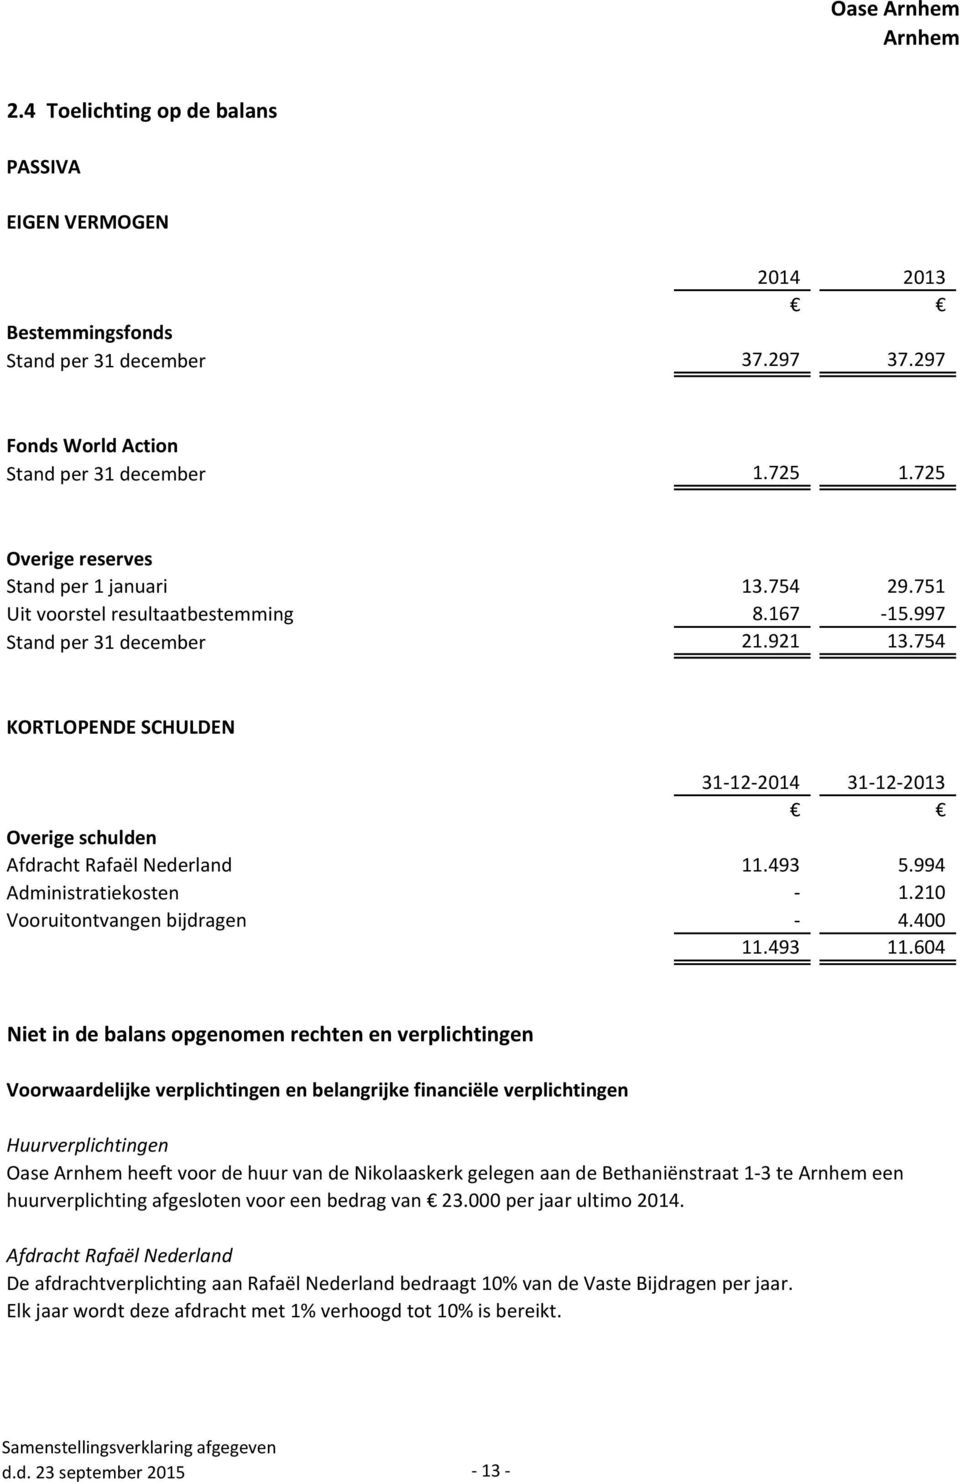 754 KORTLOPENDE SCHULDEN 31-12-2014 31-12-2013 Overige schulden Afdracht Rafaël Nederland 11.493 5.994 Administratiekosten - 1.210 Vooruitontvangen bijdragen - 4.400 11.493 11.